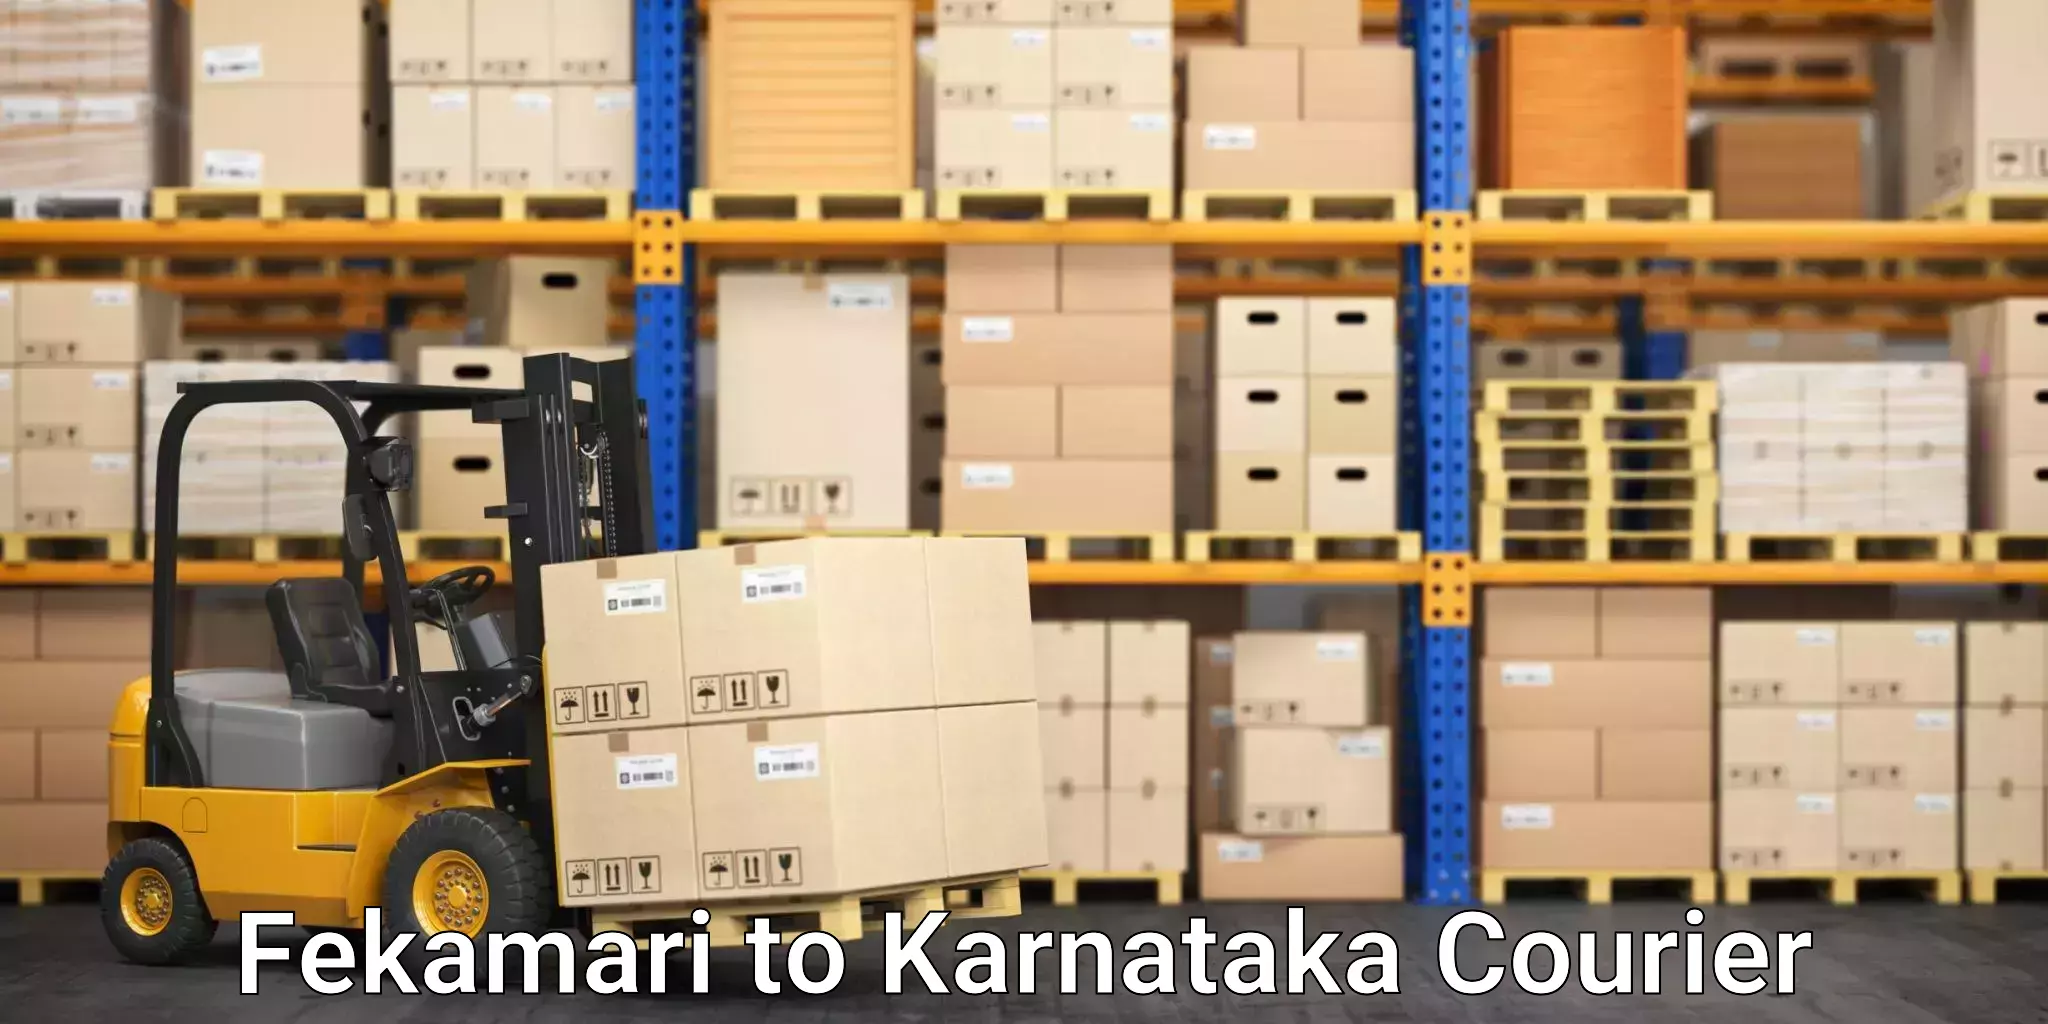 24-hour courier service Fekamari to Kanakapura